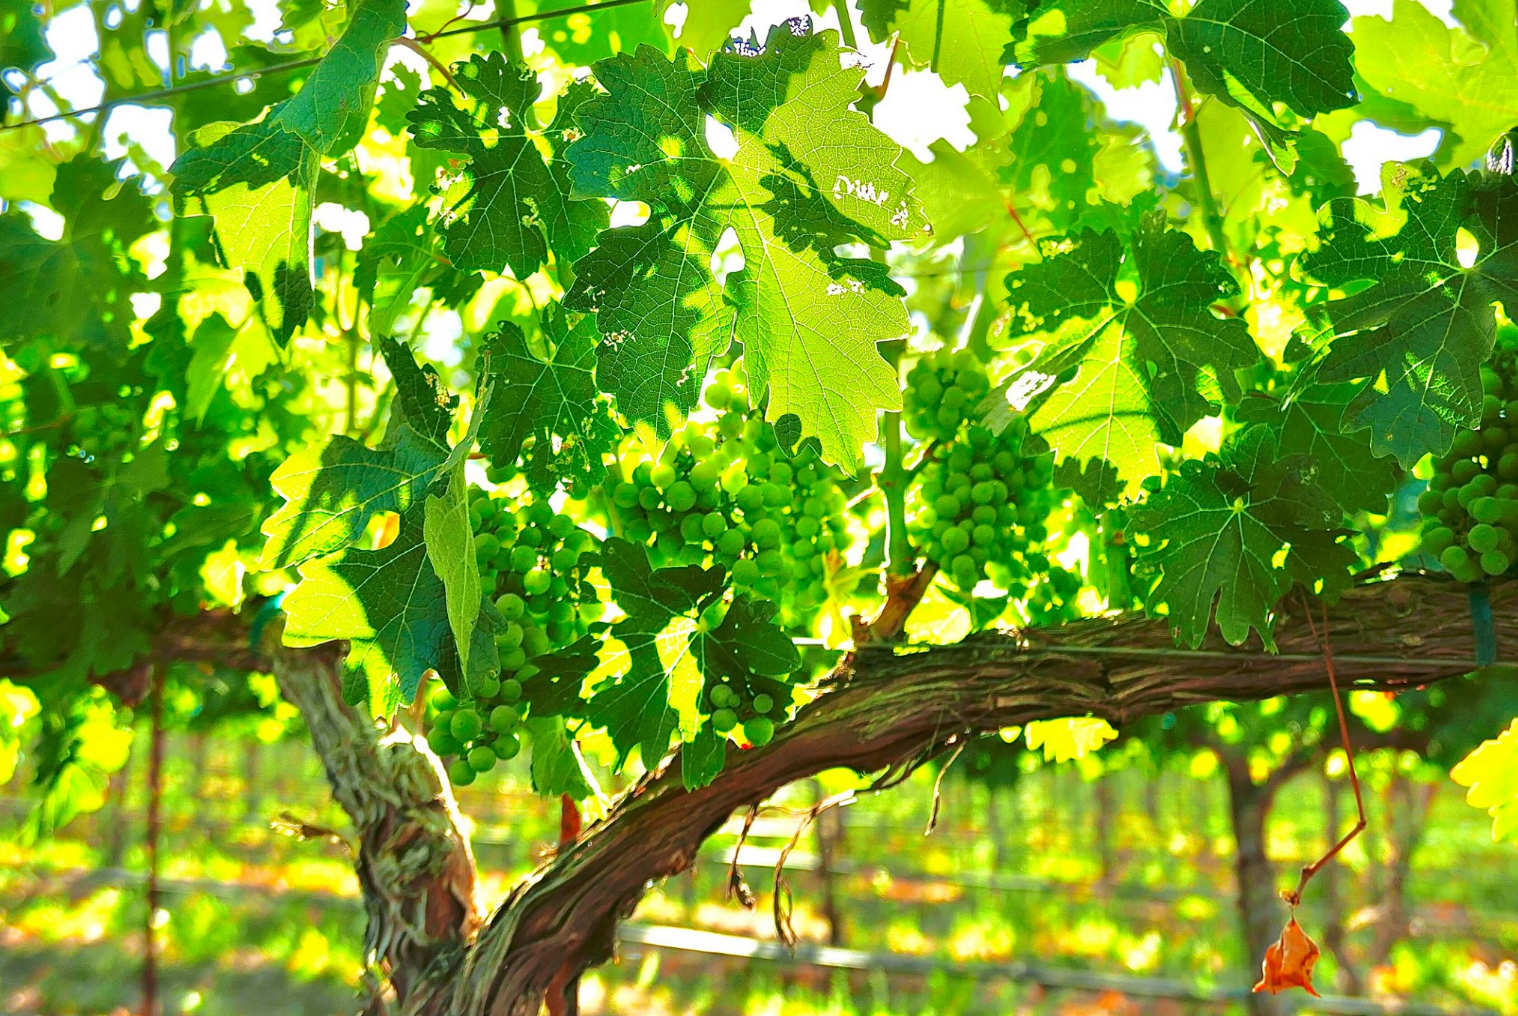 Harvest Update from Ballentine Vineyards